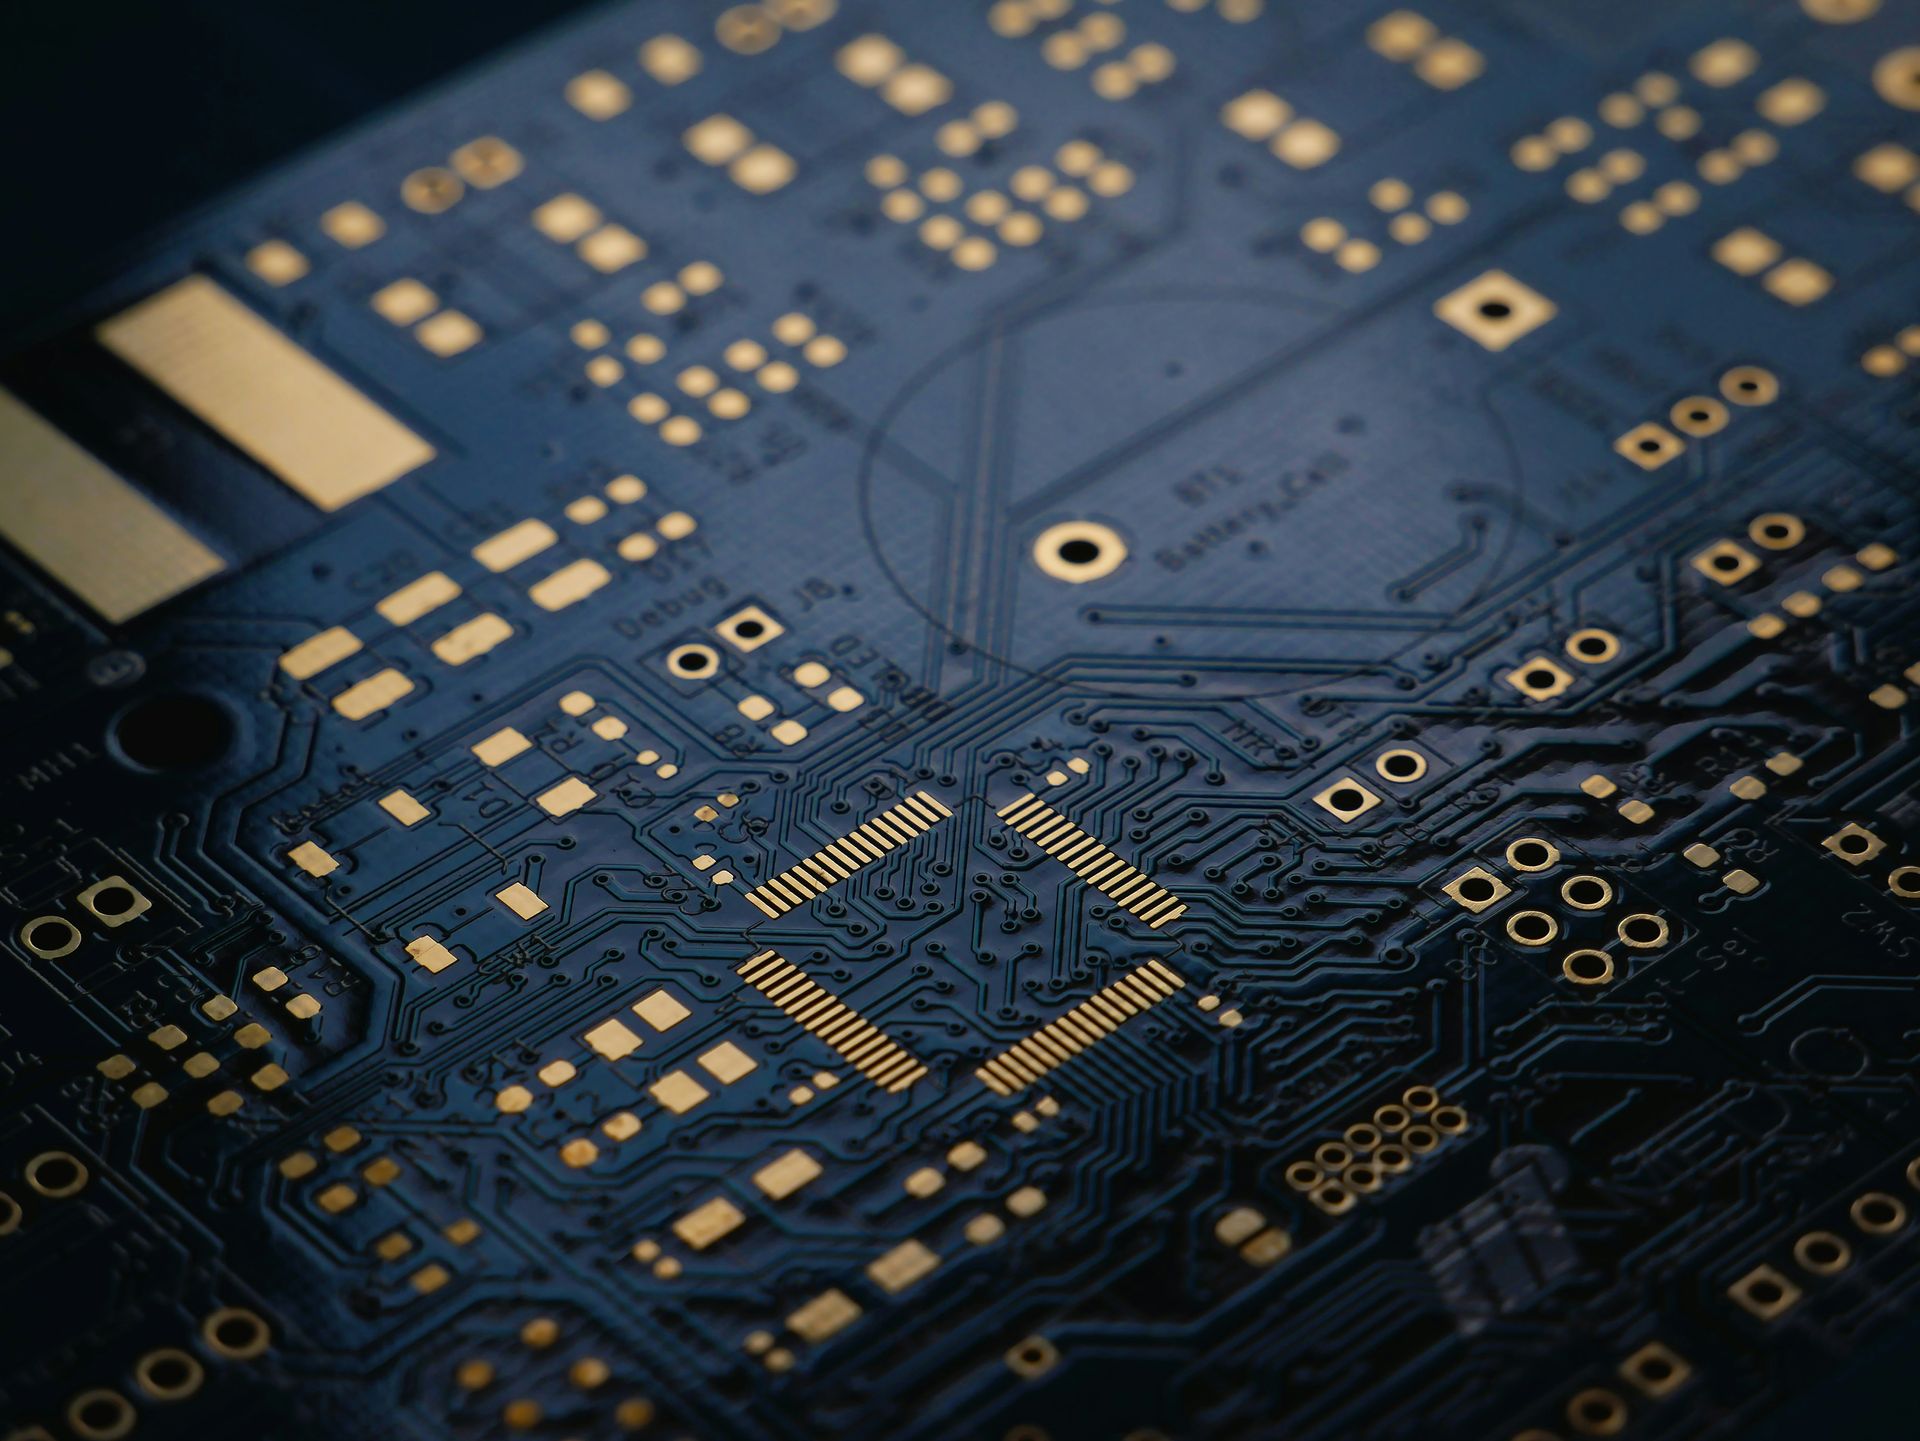 삼성은 Mach-1로 AI 칩 경쟁에서 NVIDIA를 따라잡고 싶어합니다